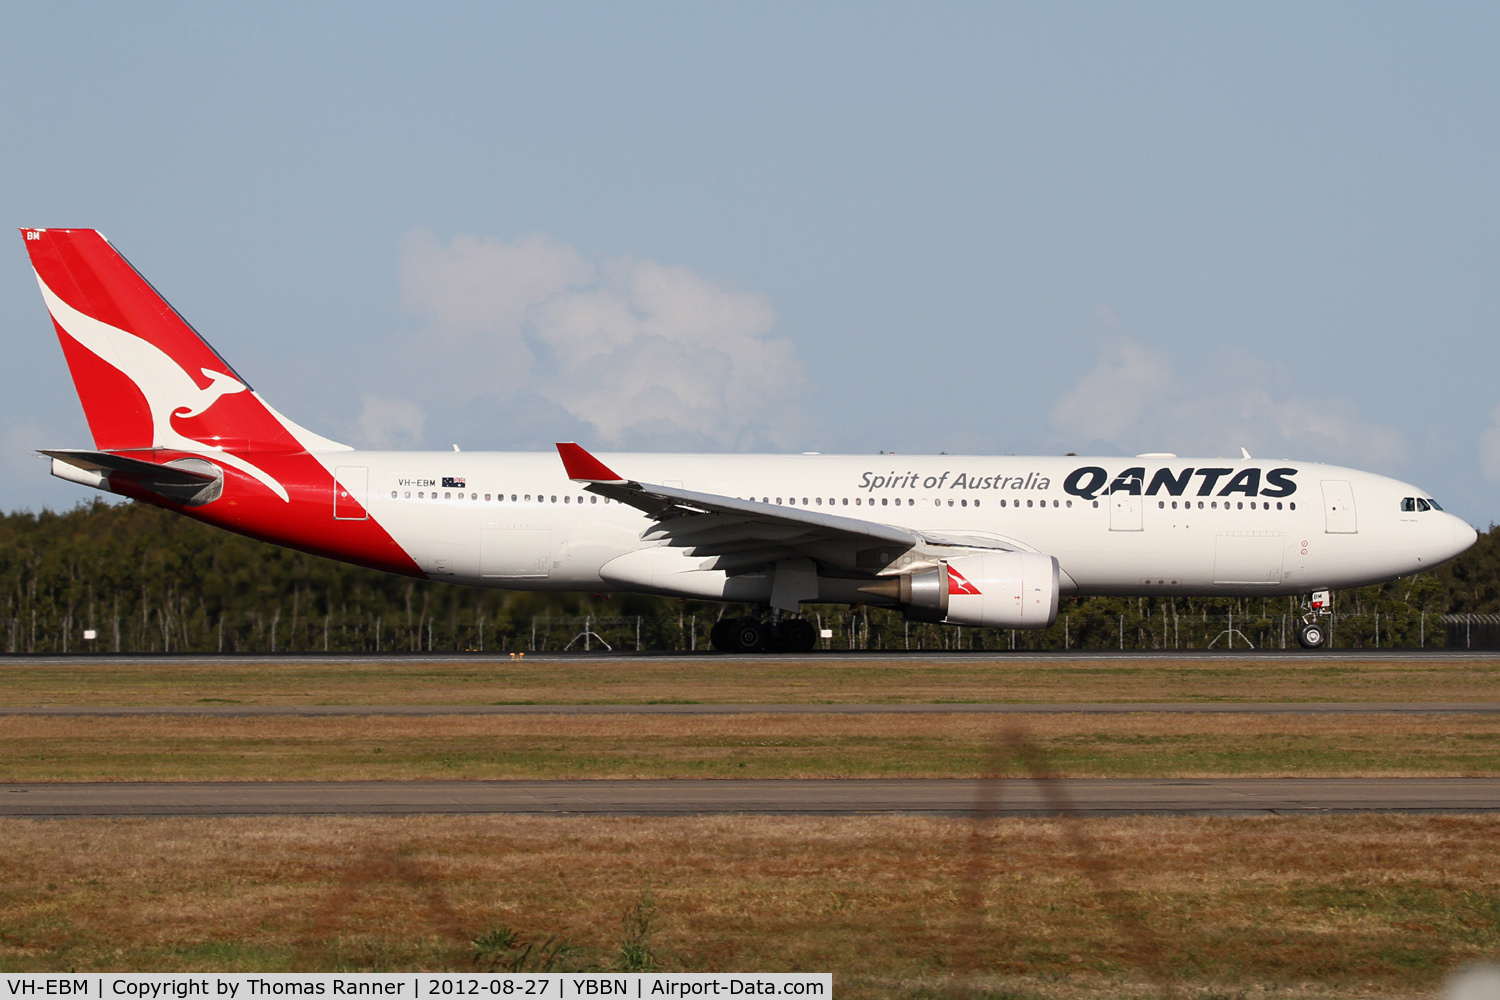 VH-EBM, 2009 Airbus A330-202 C/N 1061, Qantas Airbus A330